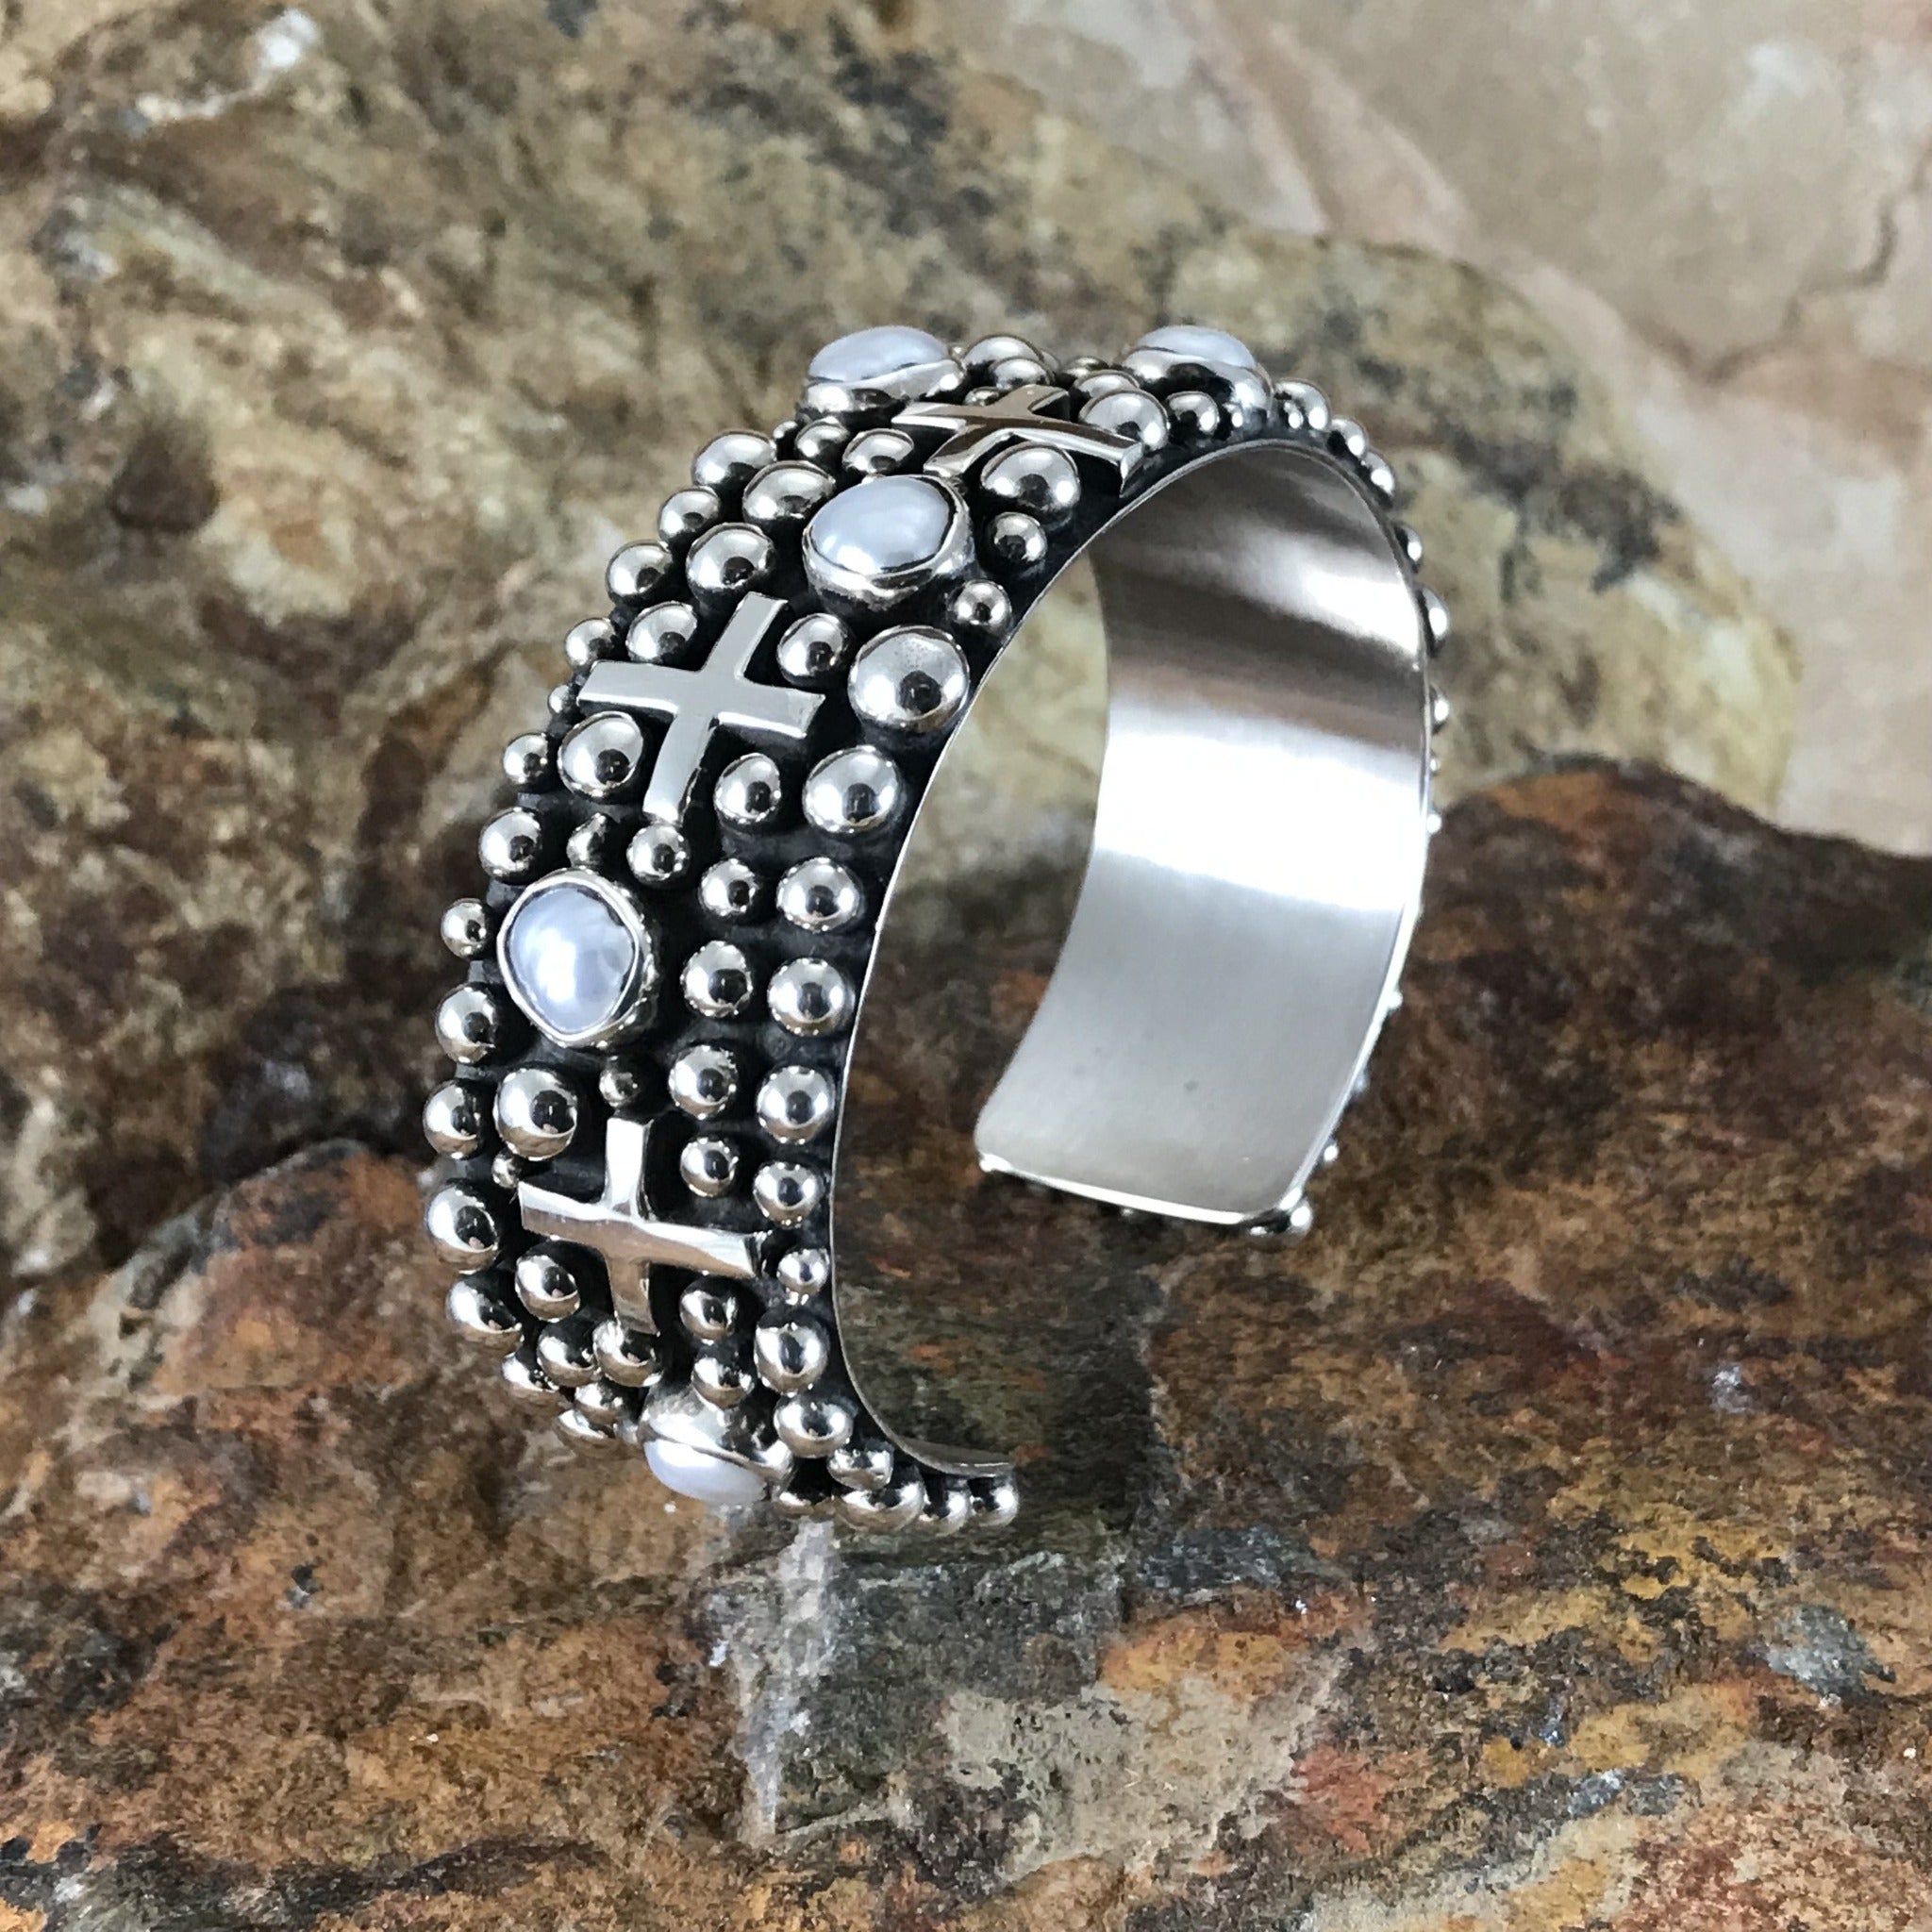 Jewelili Diamond Bracelet in Sterling Silver Jewelry